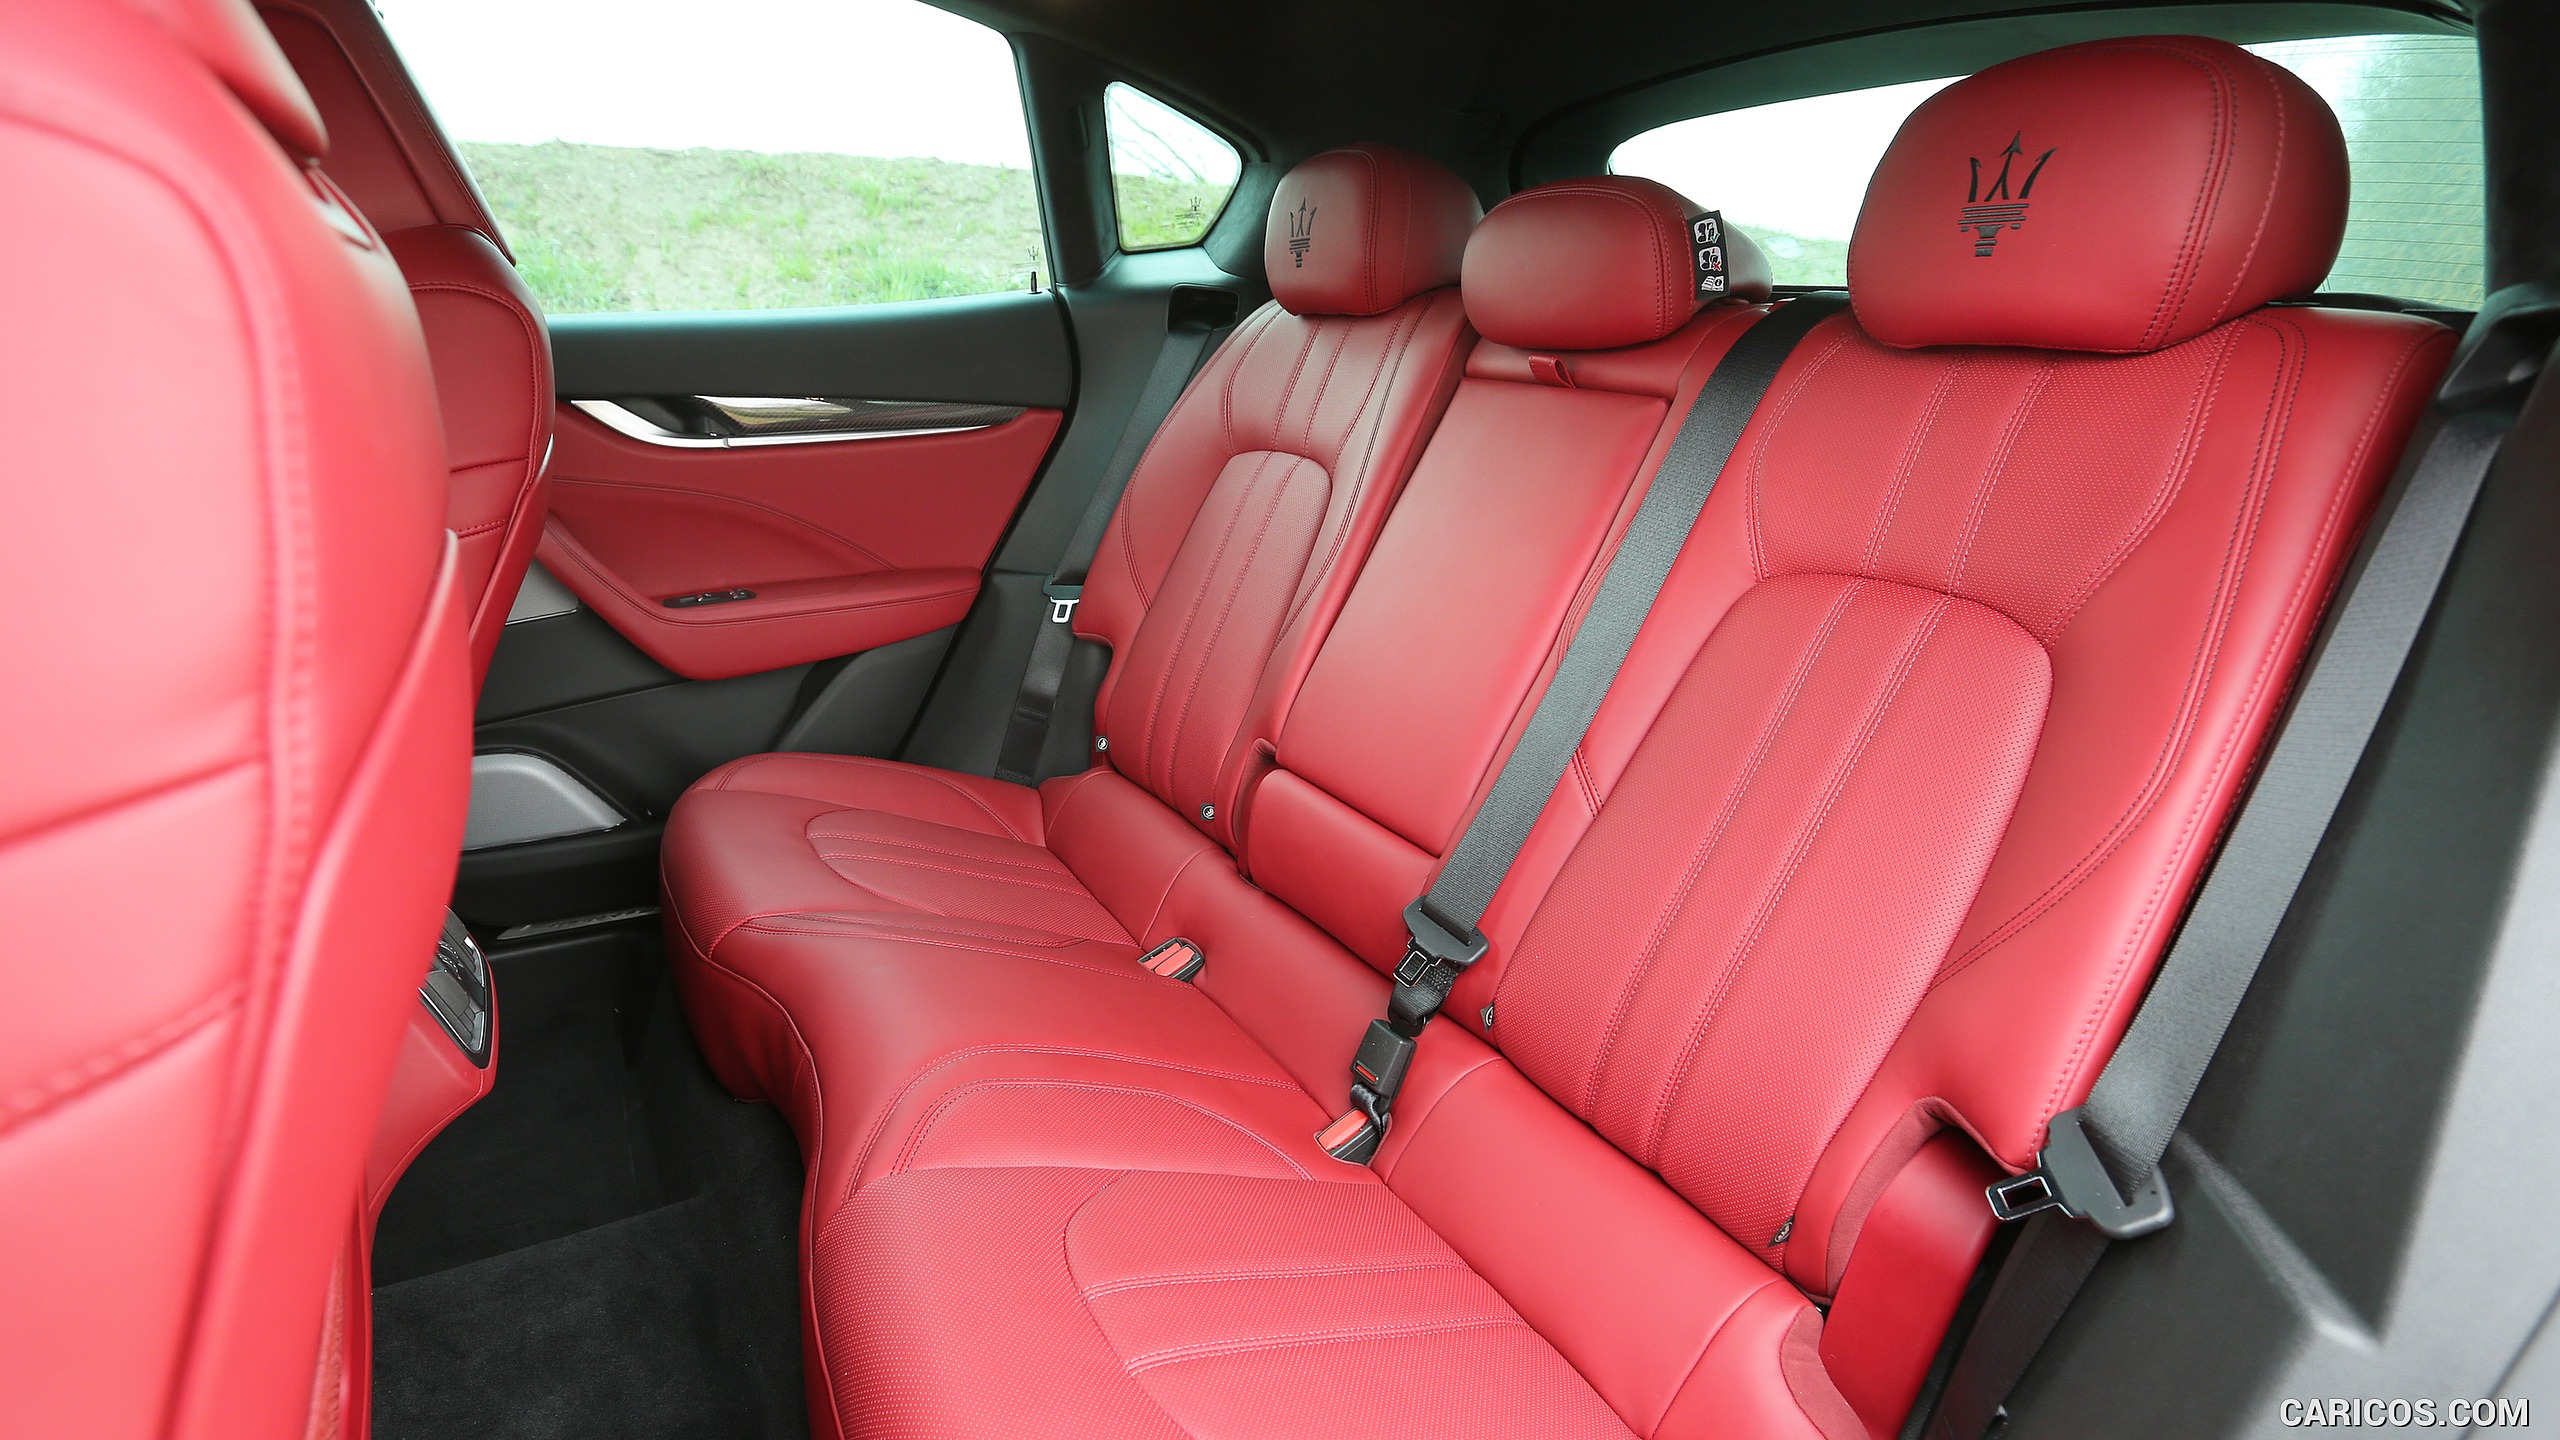 2017 Maserati Levante SUV - Interior, Rear Seats, #100 of 119